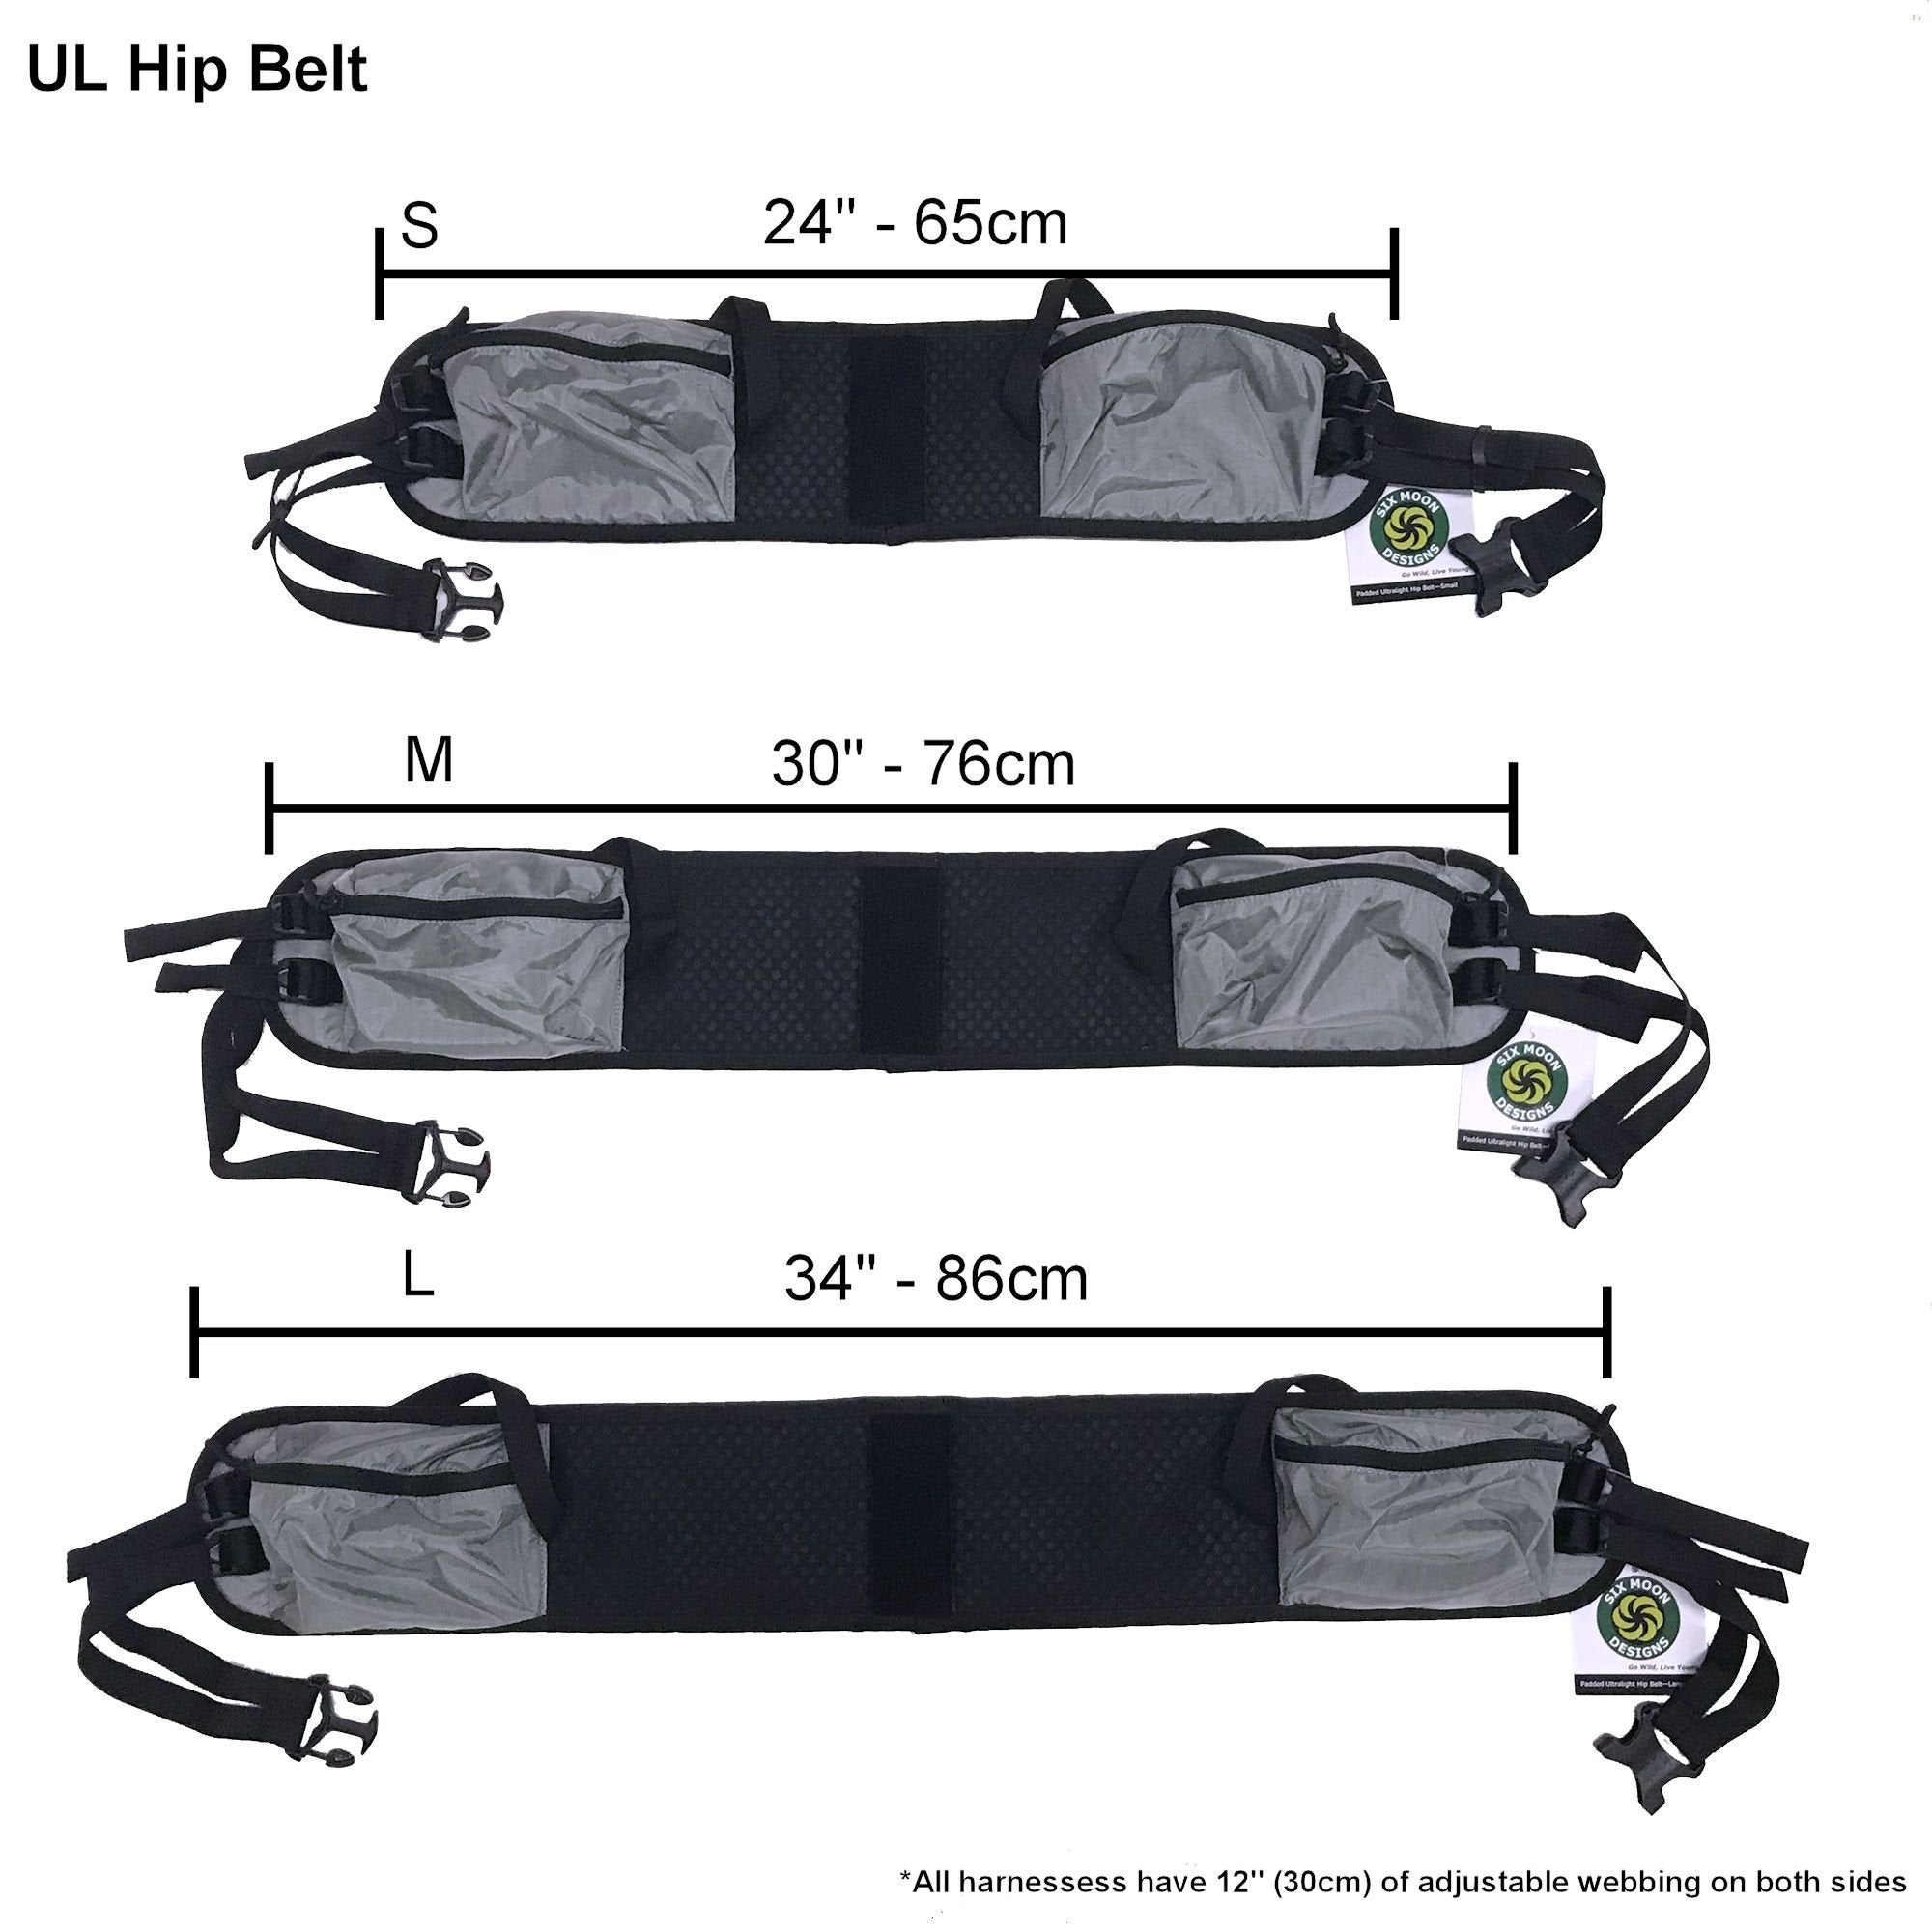 Hip Belt size comparison with measurements. 